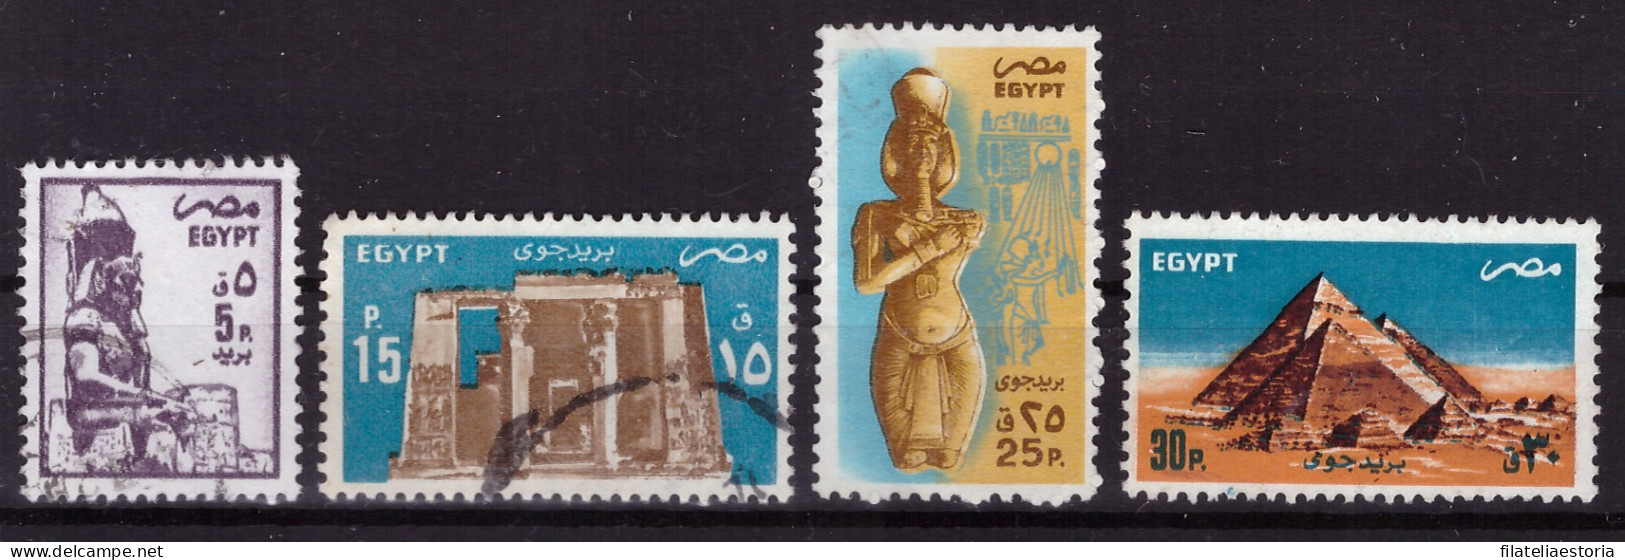 Egypte 1985/1998 - Oblitéré - Monuments - Art - Michel Nr. 1501 1506 1509-1510 (egy361) - Usati